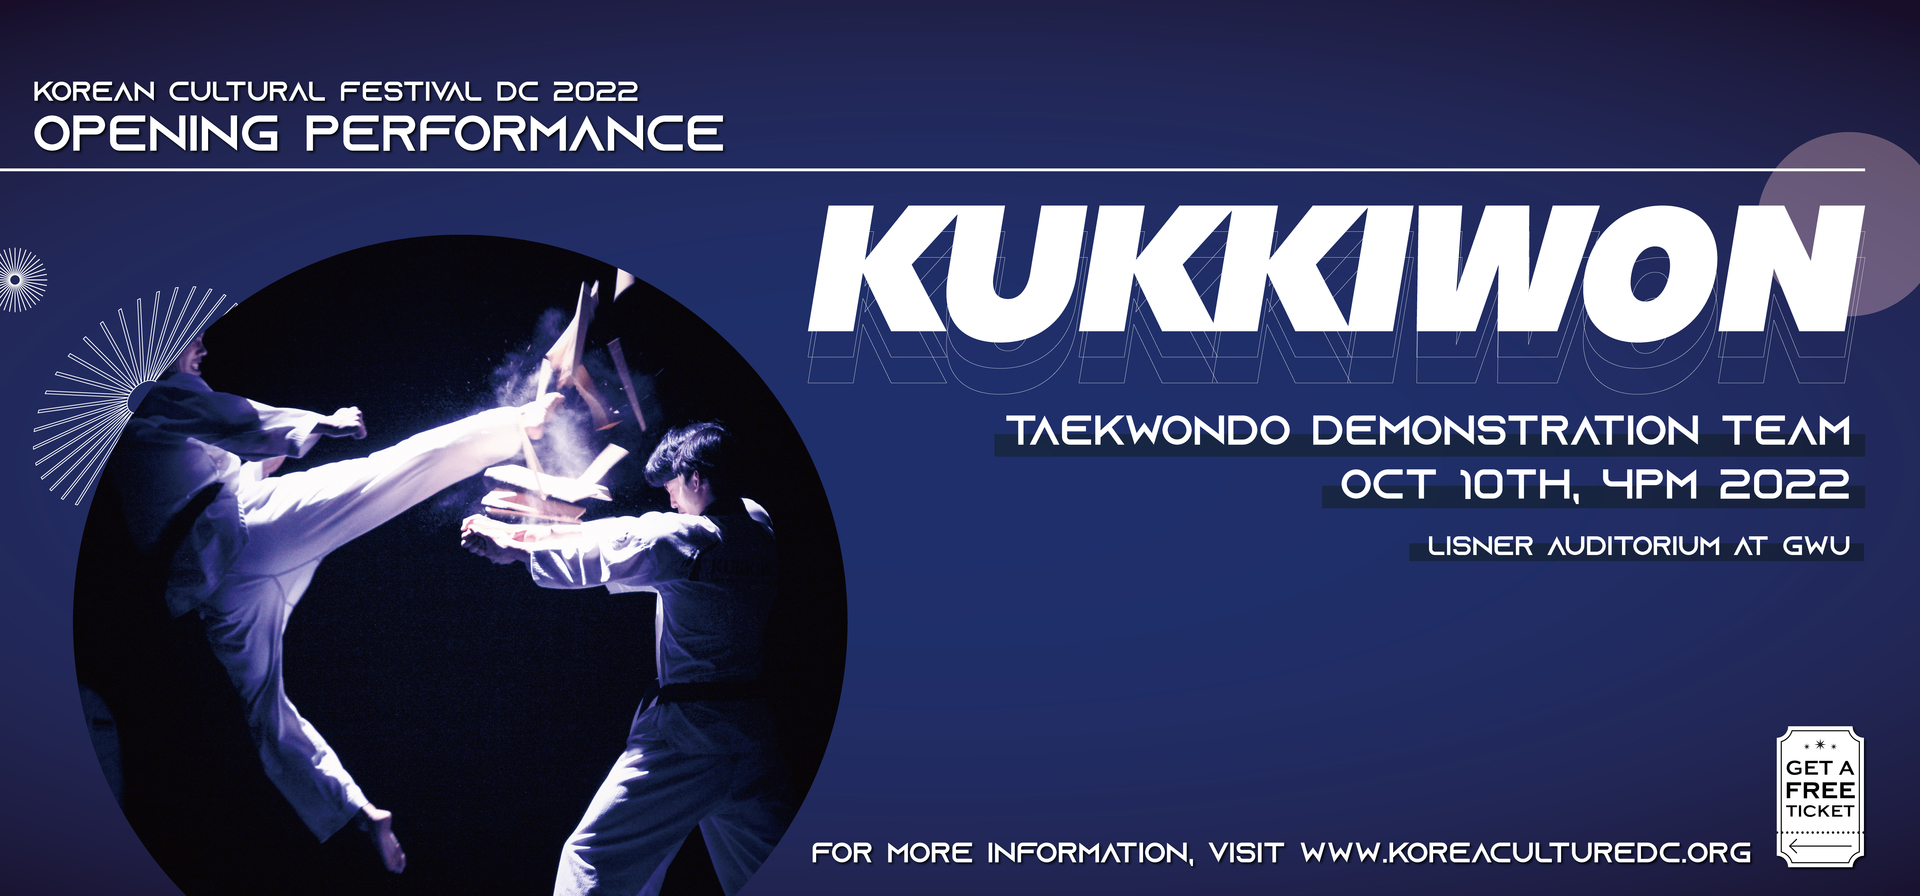 Special Opening Performance, Kukkiwon Taekwondo Demo Team, Washington,Washington, D.C,United States